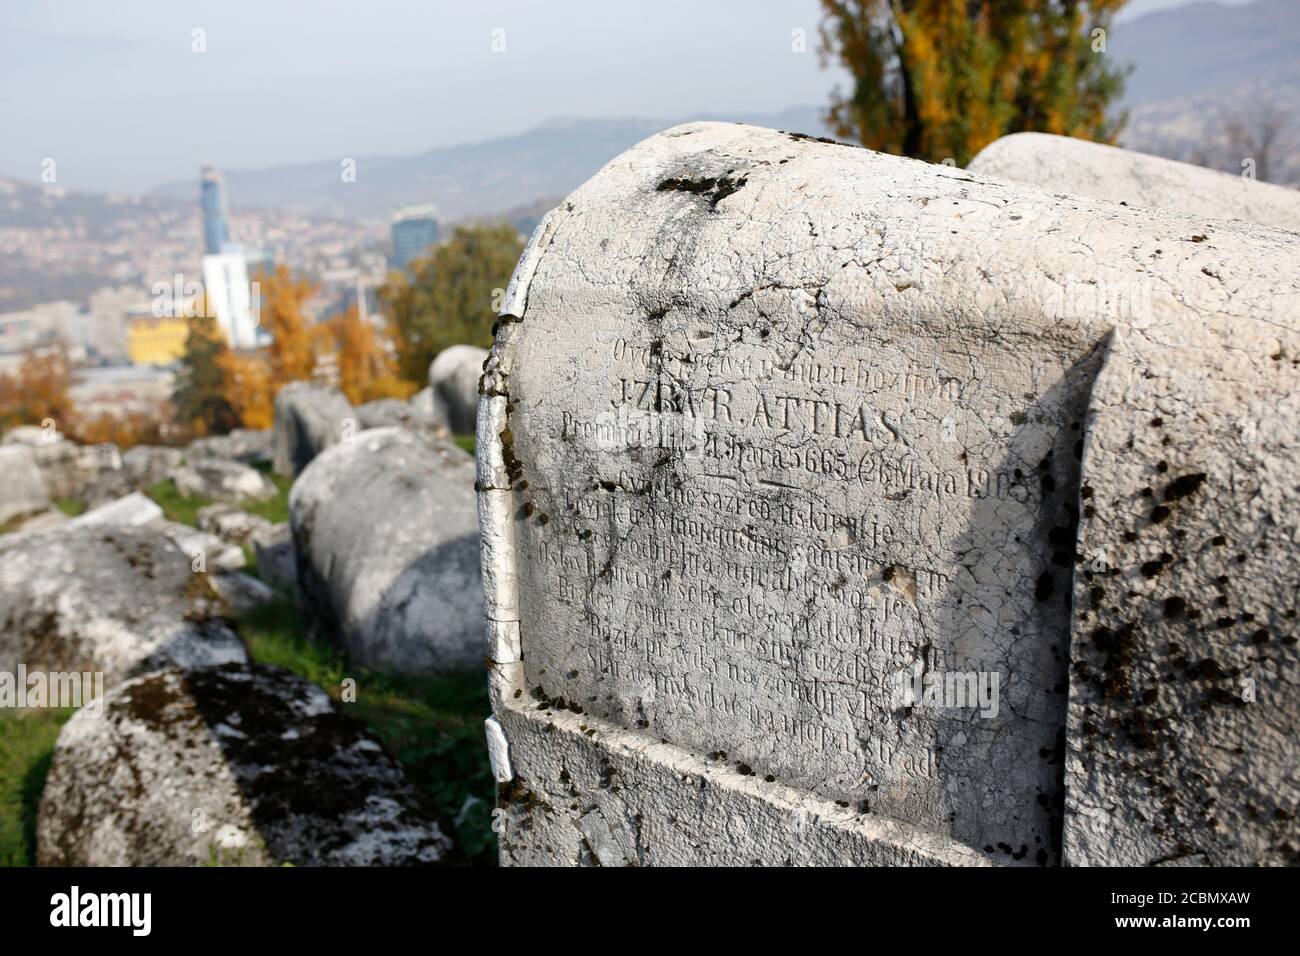 El Cementerio Judío OID es un cementerio de casi 500 años de antigüedad en Sarajevo, Bosnia y Herzegovina. Foto de stock